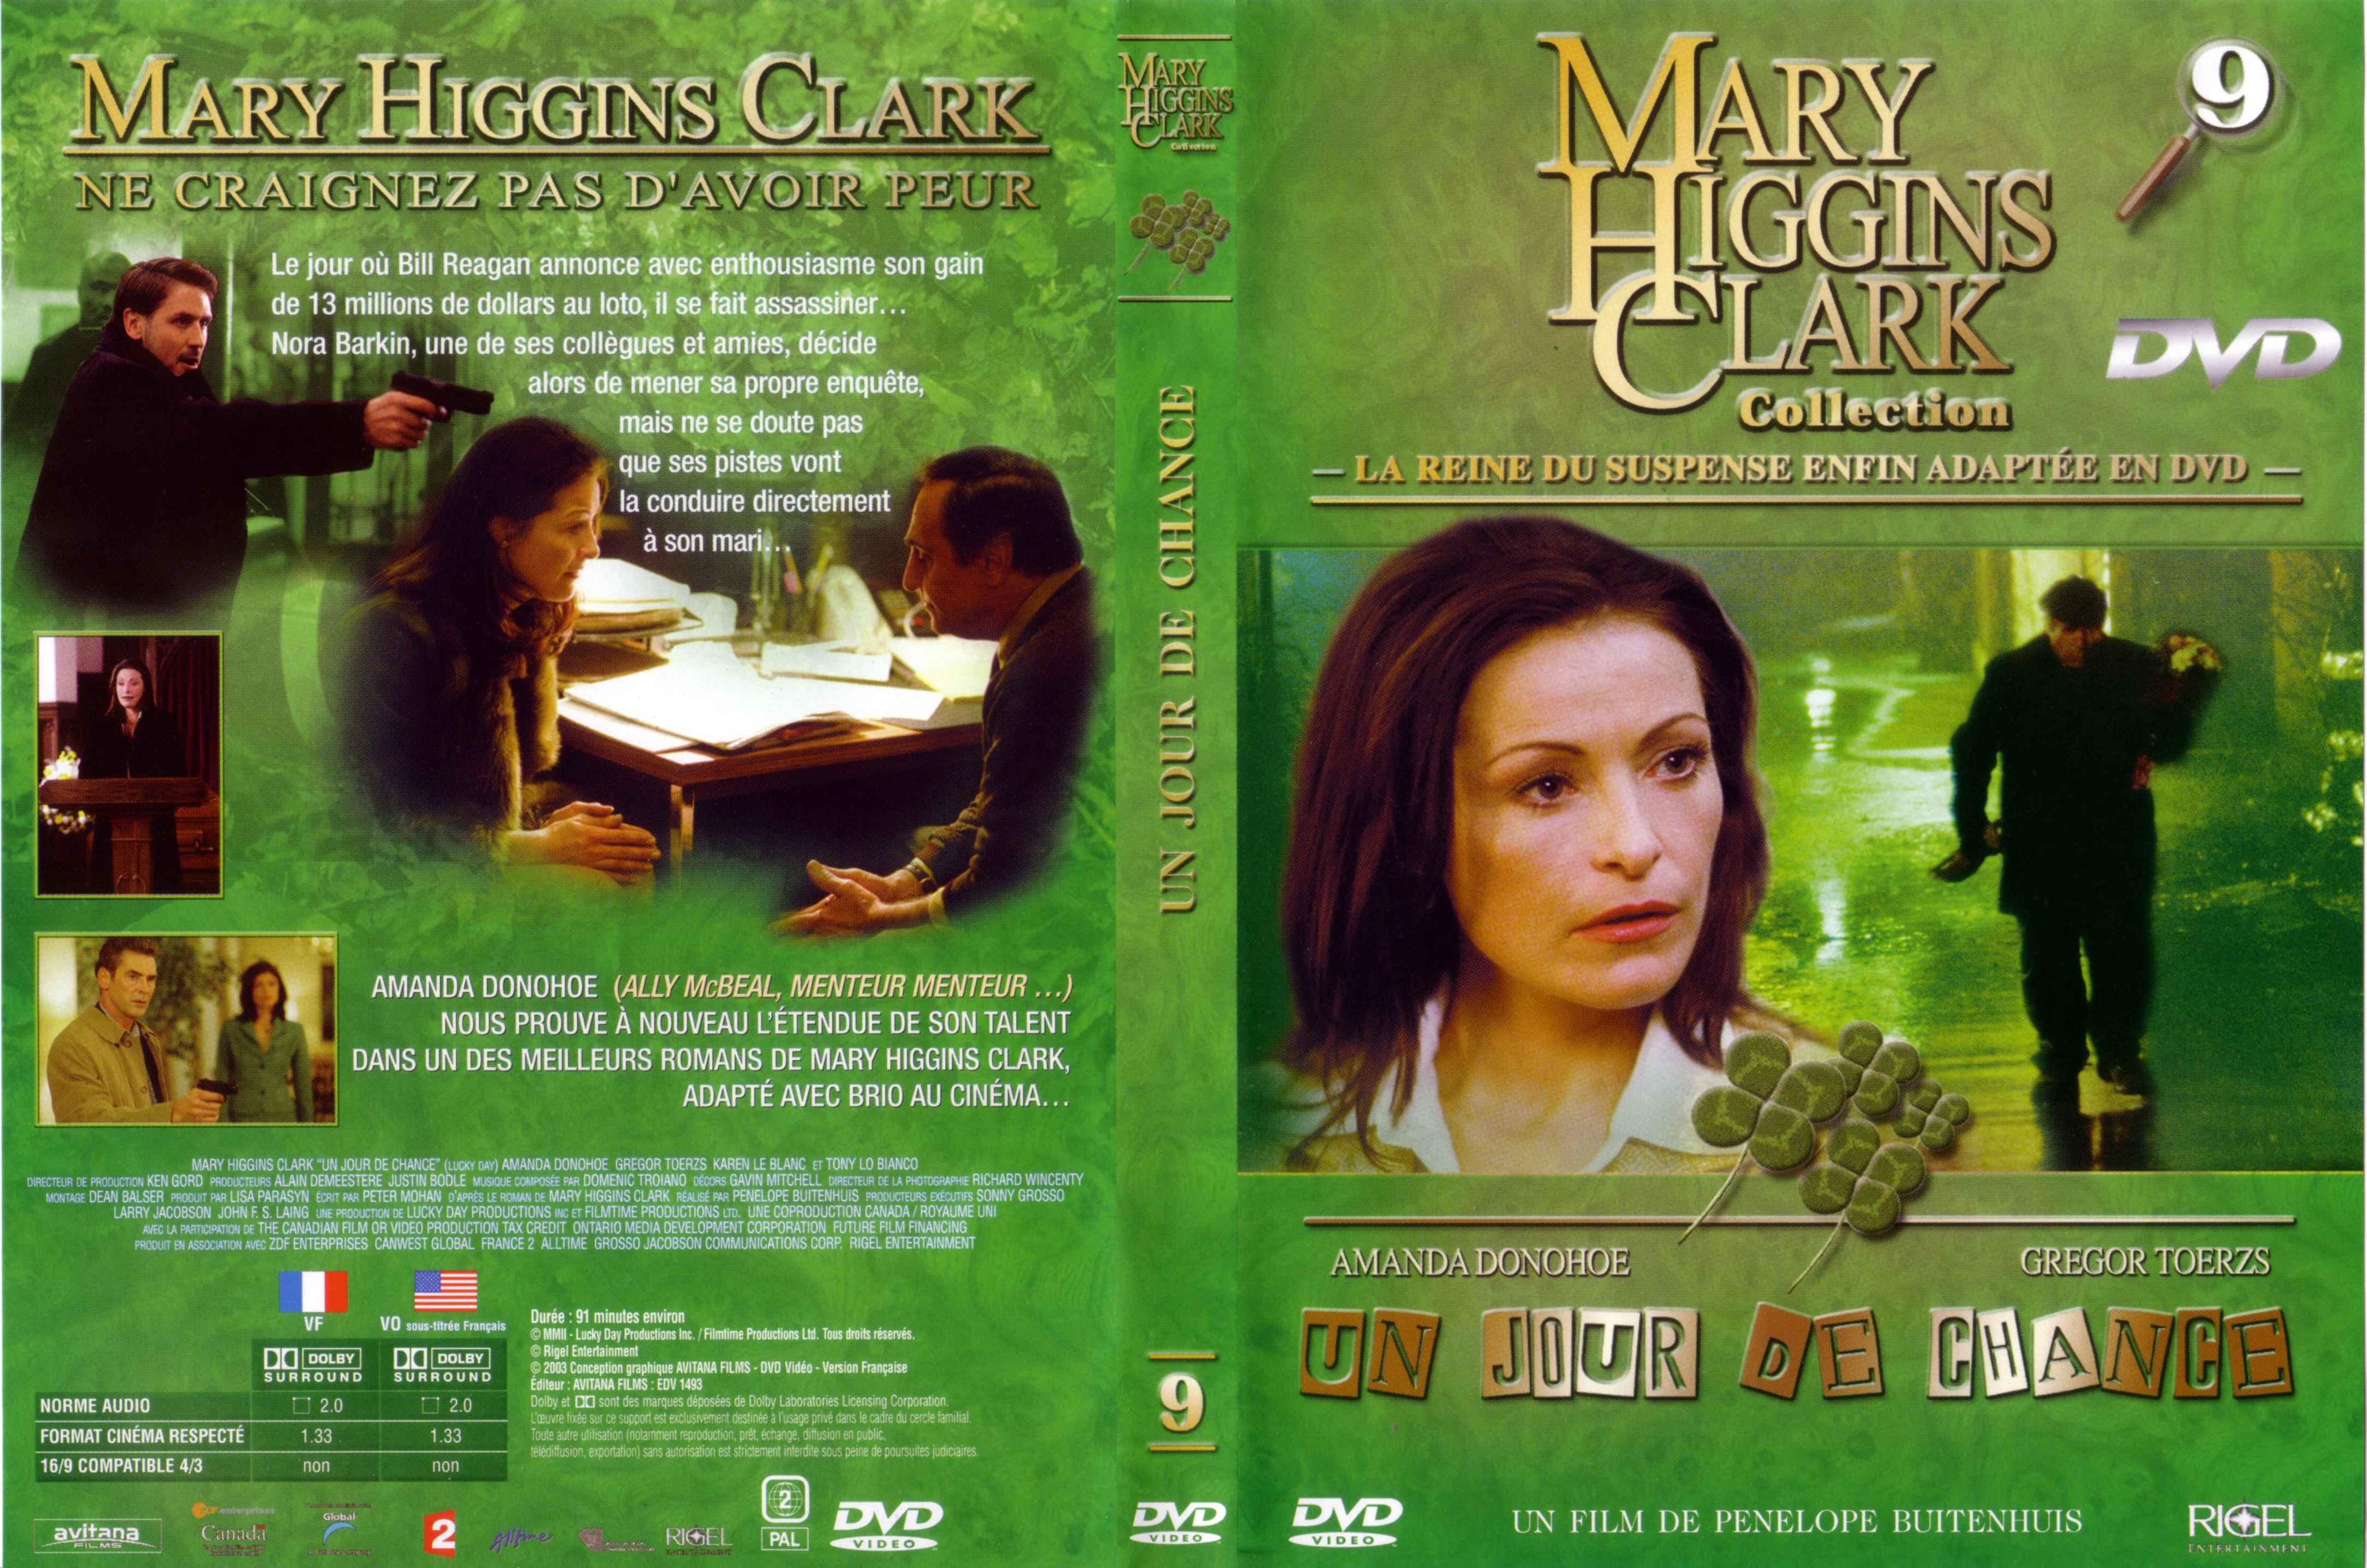 Jaquette DVD Mary Higgins Clark vol 09 - Un jour de chance